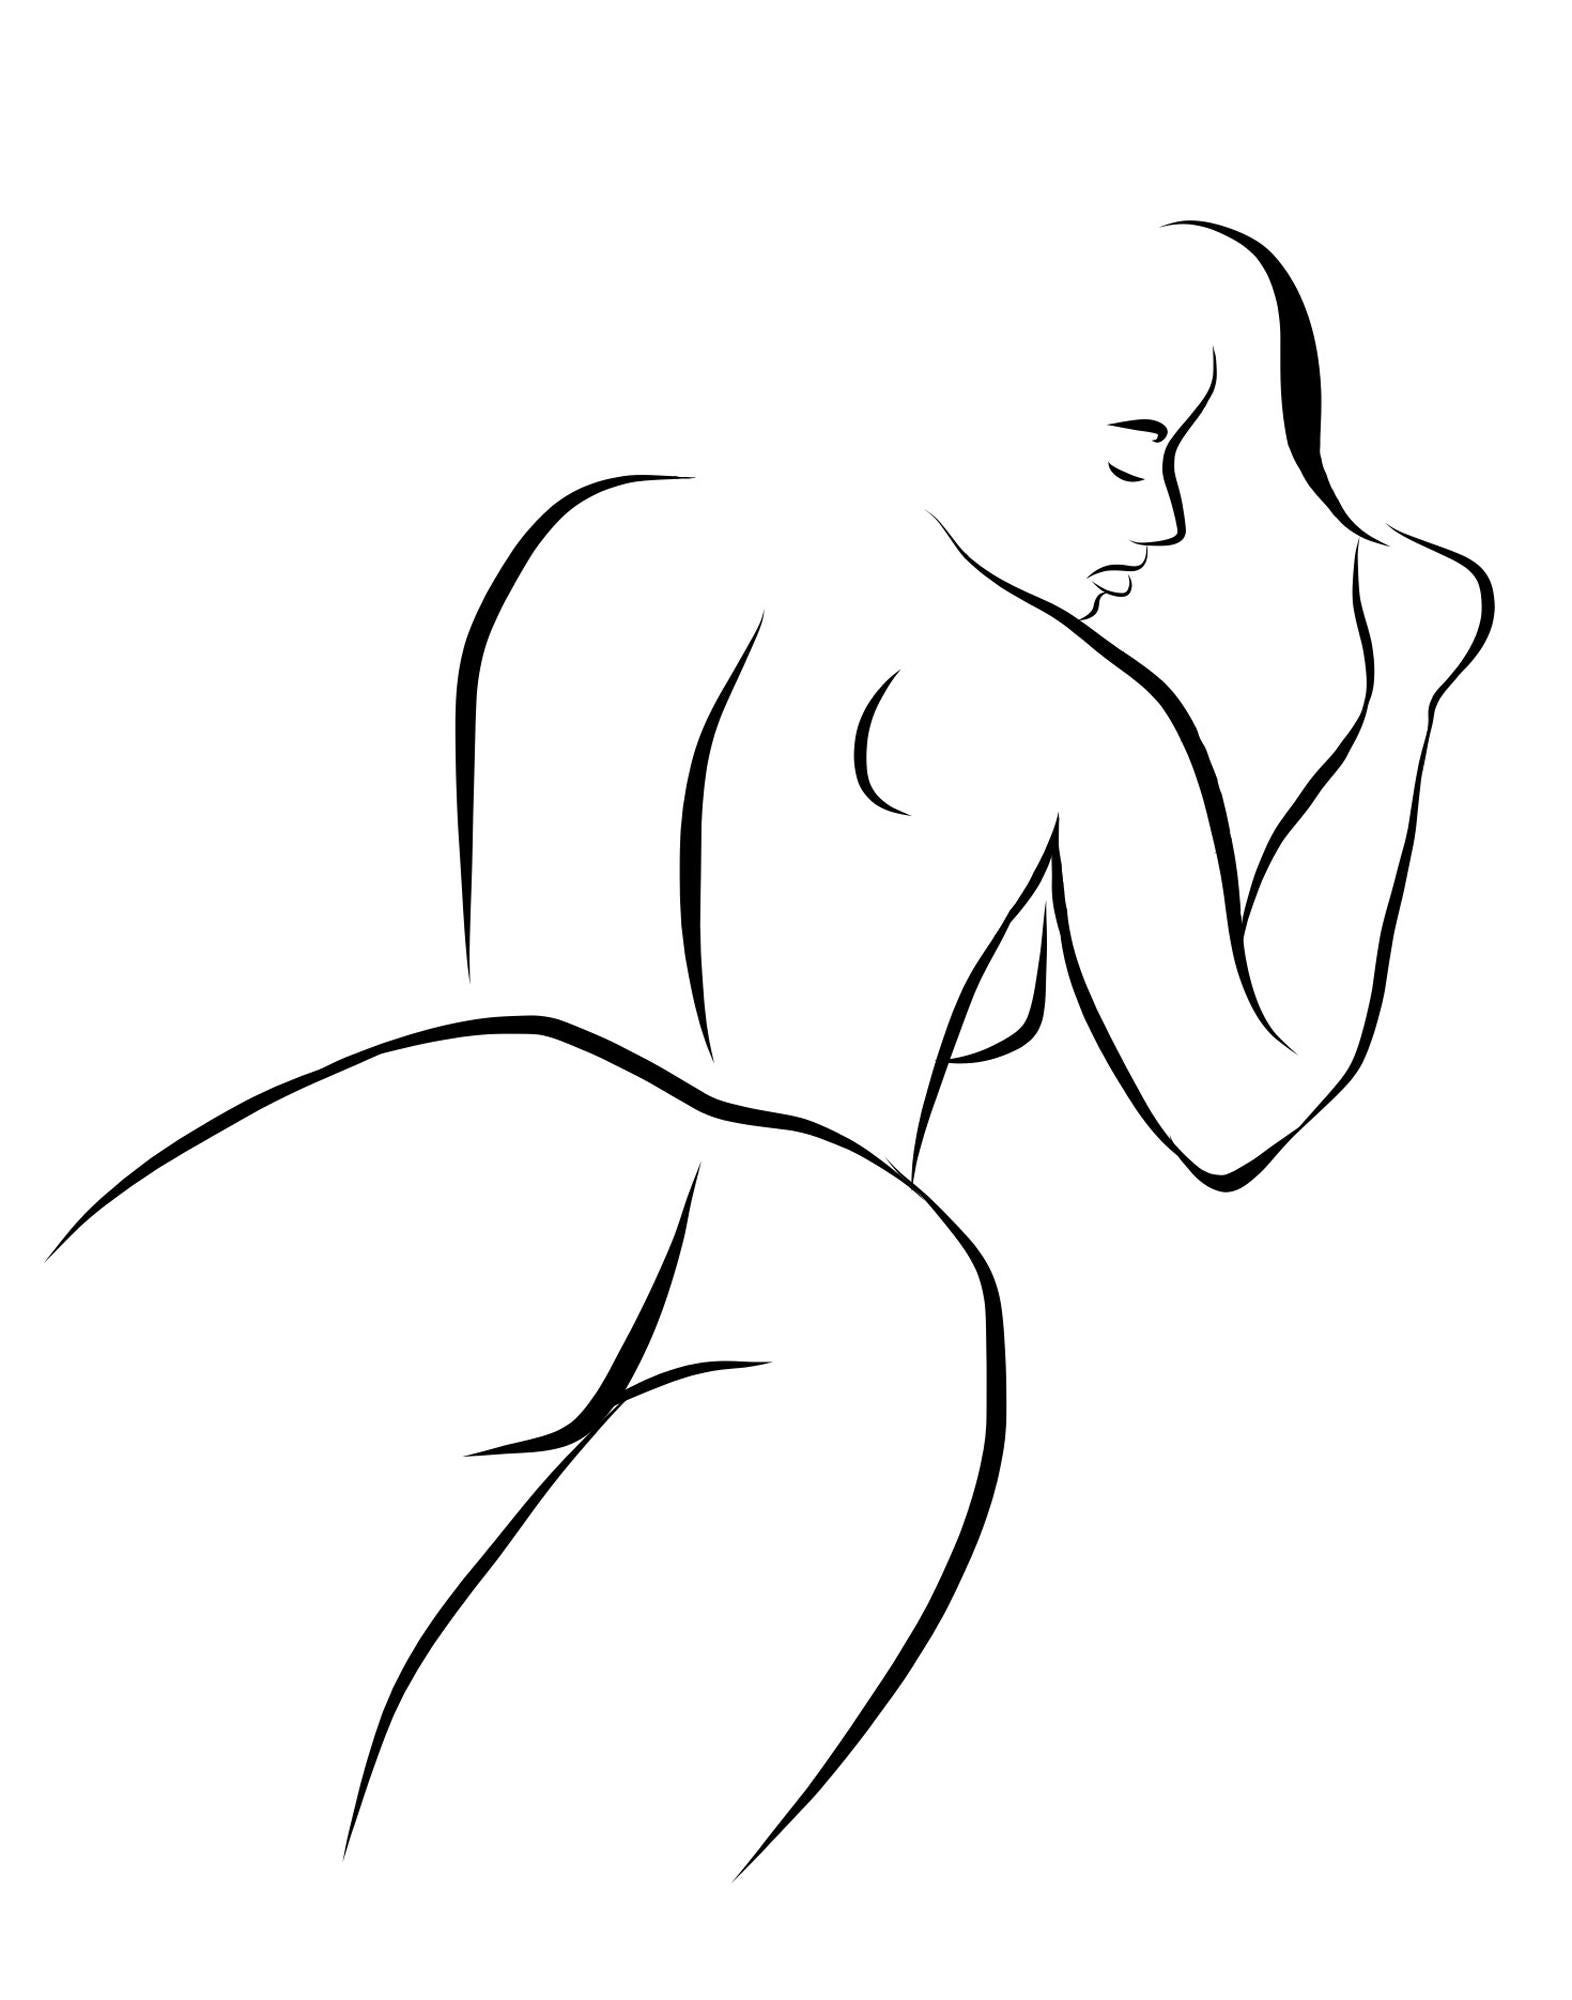 Michael Binkley Nude Print – Haiku #10   Digitale Vector Zeichnung B&W Liegende weibliche Aktfigur